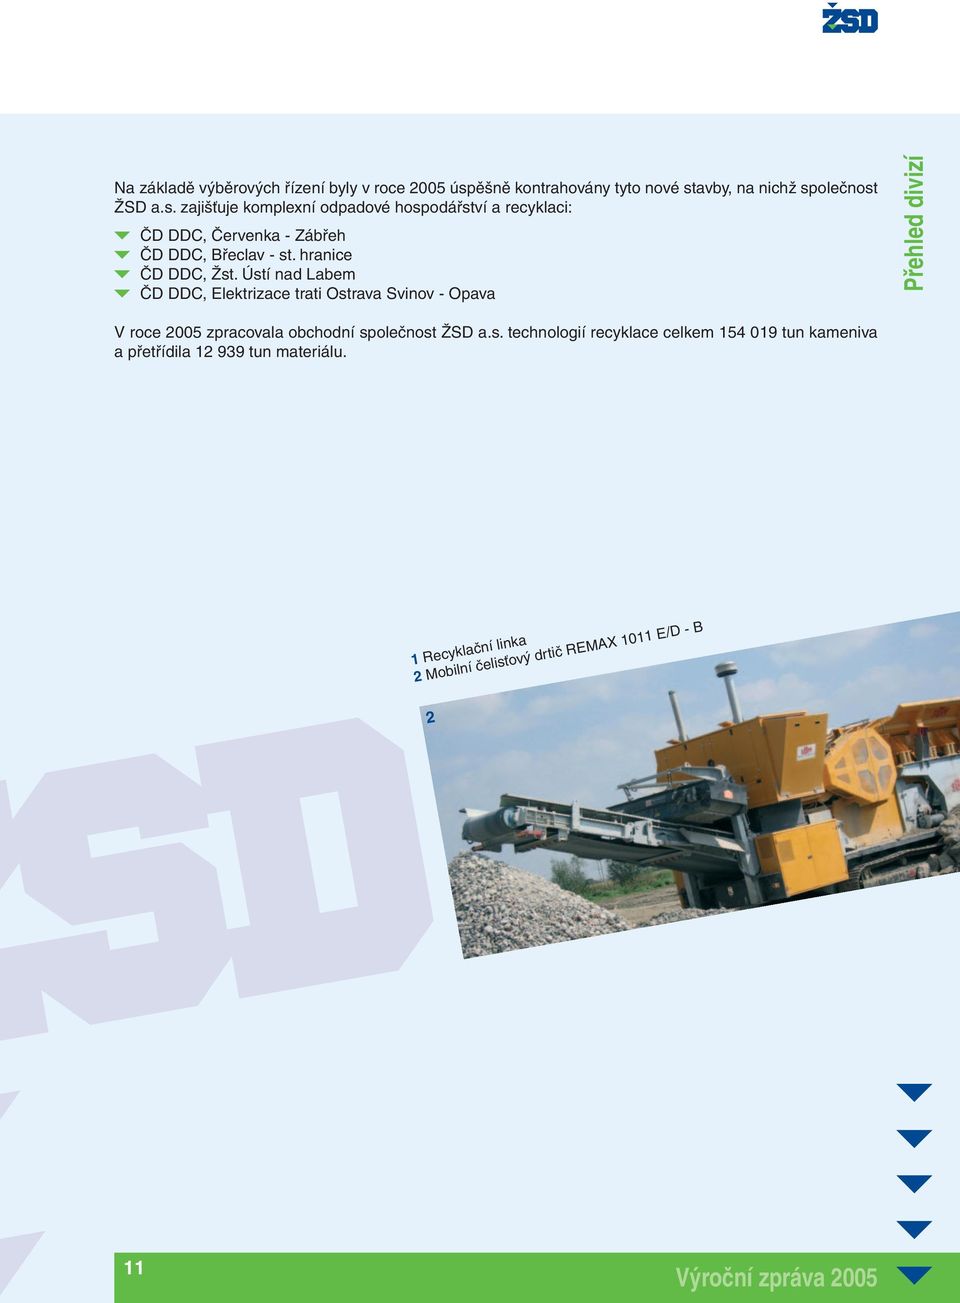 avby, na nichž společnost ŽSD a.s. zajišťuje komplexní odpadové hospodářství a recyklaci: ČD DDC, Červenka - Zábřeh ČD DDC, Břeclav - st.